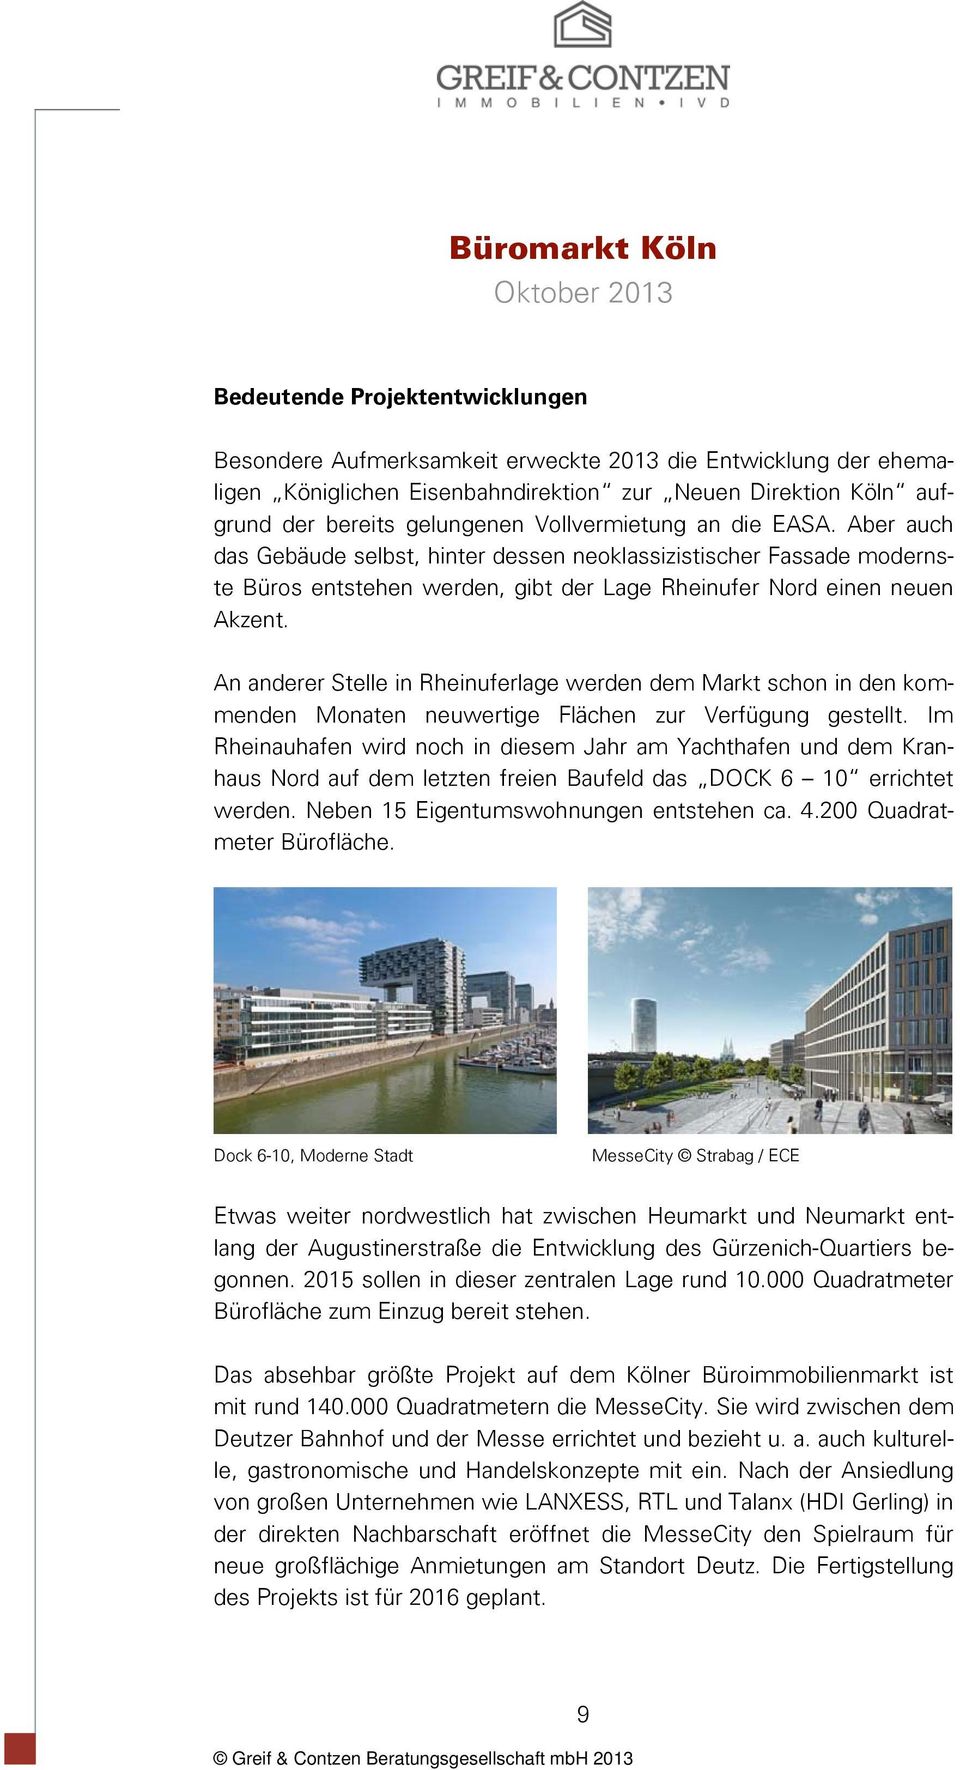 An anderer Stelle in Rheinuferlage werden dem Markt schon in den kommenden Monaten neuwertige Flächen zur Verfügung gestellt.